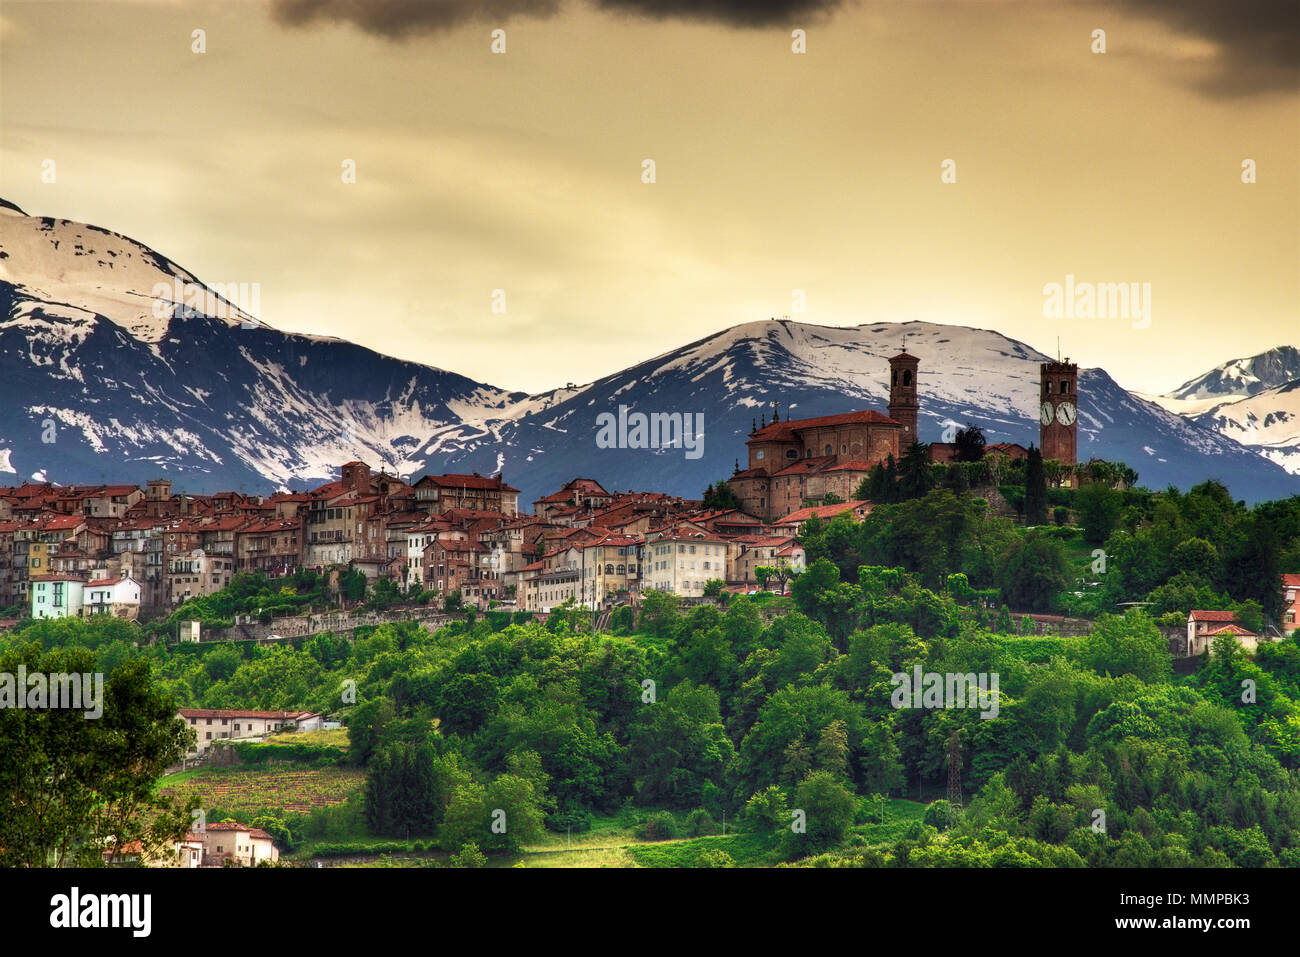 Vue de la partie supérieure et la partie la plus ancienne (Piazza) de la ville de Mondovì, avec l'arrière-plan des Alpes. Mondovì, province de Cuneo, Piémont, Italie du Nord. Banque D'Images